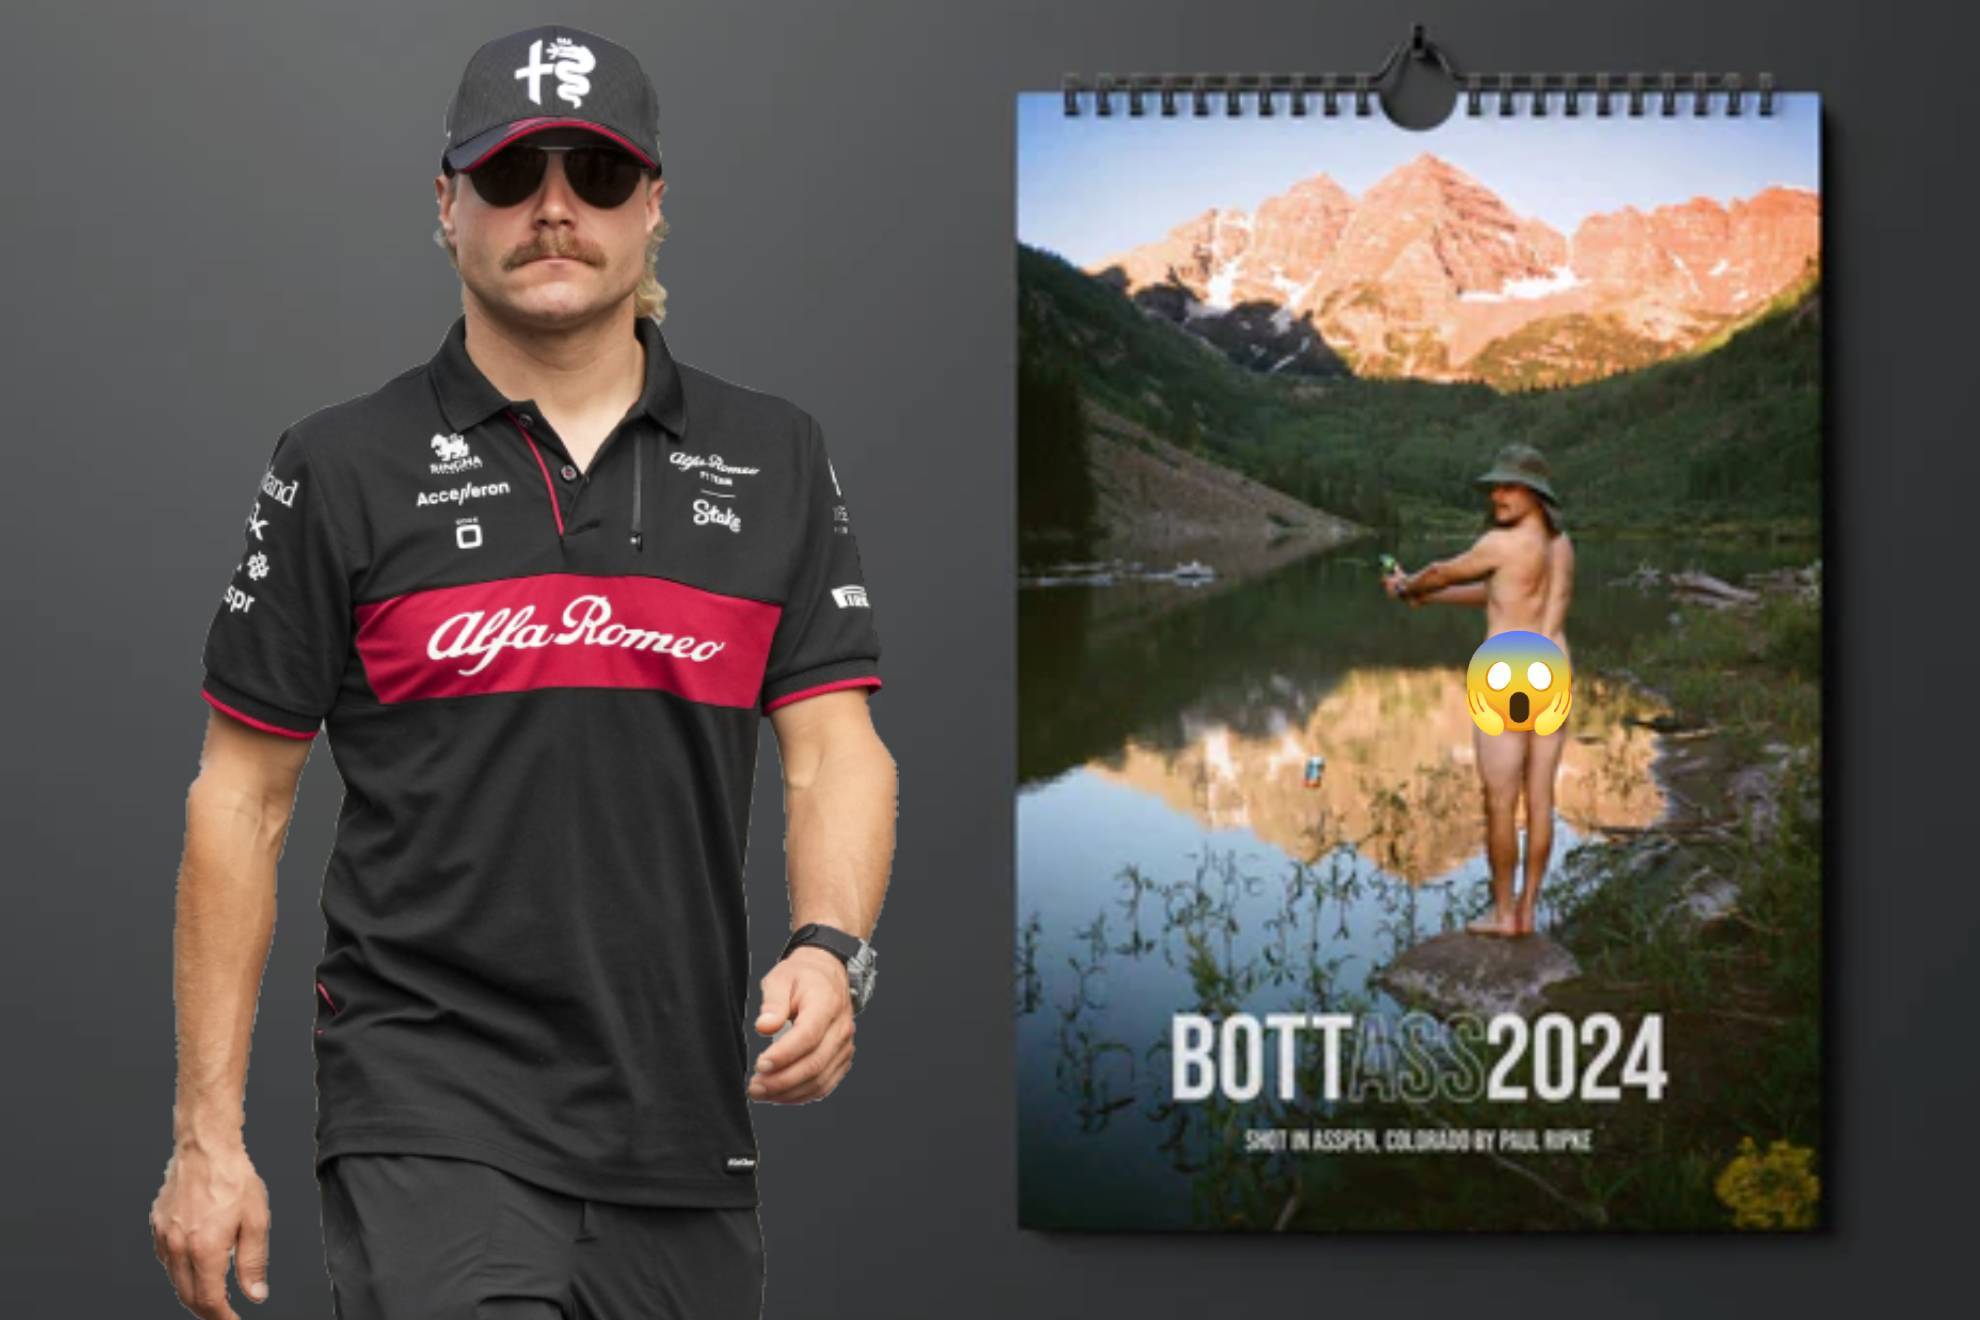 Valtteri Bottas lanza calendario mostrando su trasero por una noble